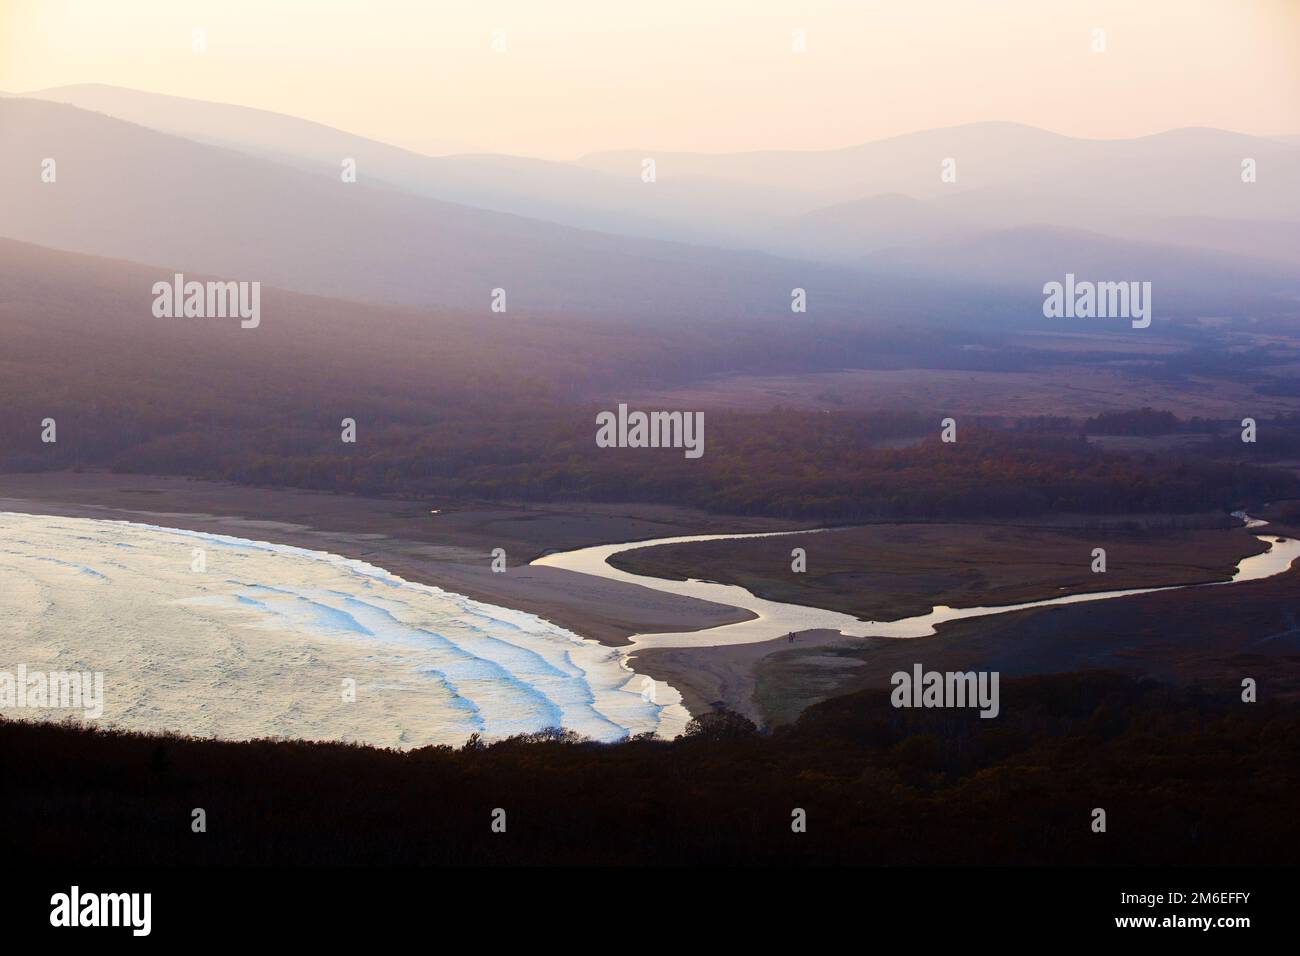 Réserve de biosphère de Sikhote-Alin dans le territoire de Primorsky. Vue panoramique sur la plage de sable de la baie de Goluchnaya et le lac. Banque D'Images